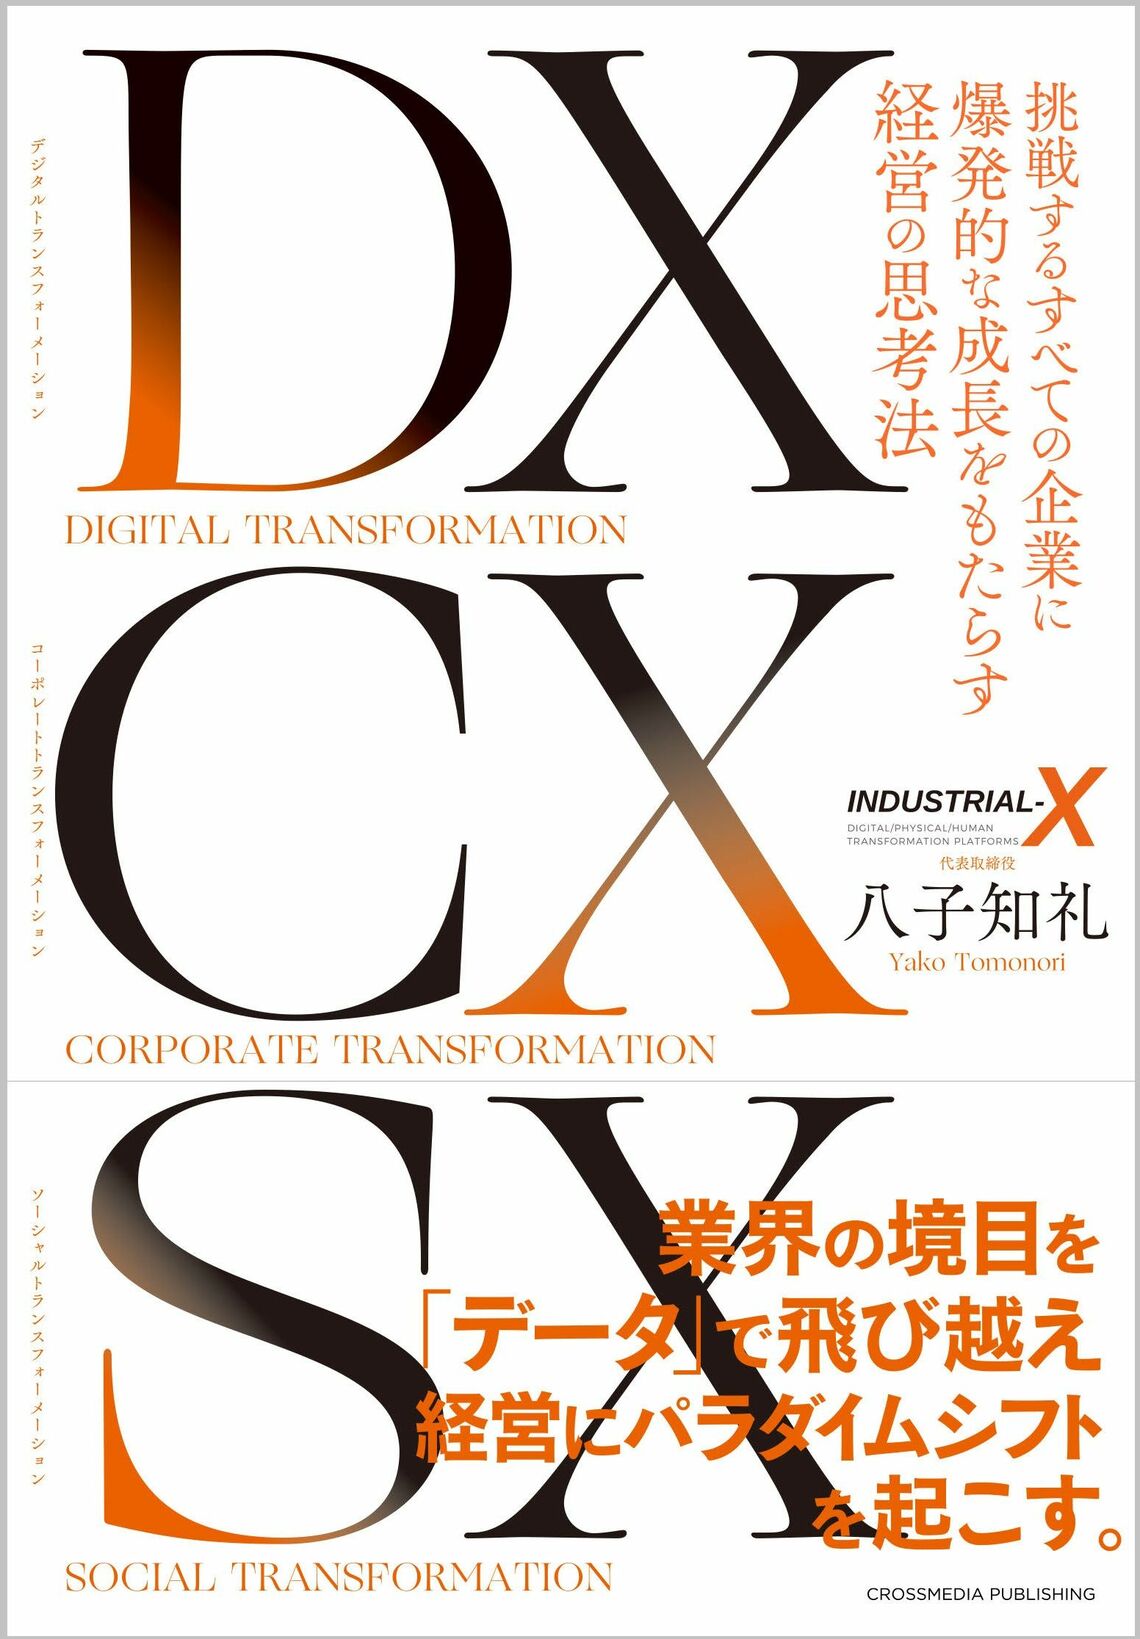 『DX CX SX ～挑戦するすべての企業に爆発的な成長をもたらす経営の思考法～』書影をクリックするとクロスメディア・パブリッシングのサイトにジャンプします